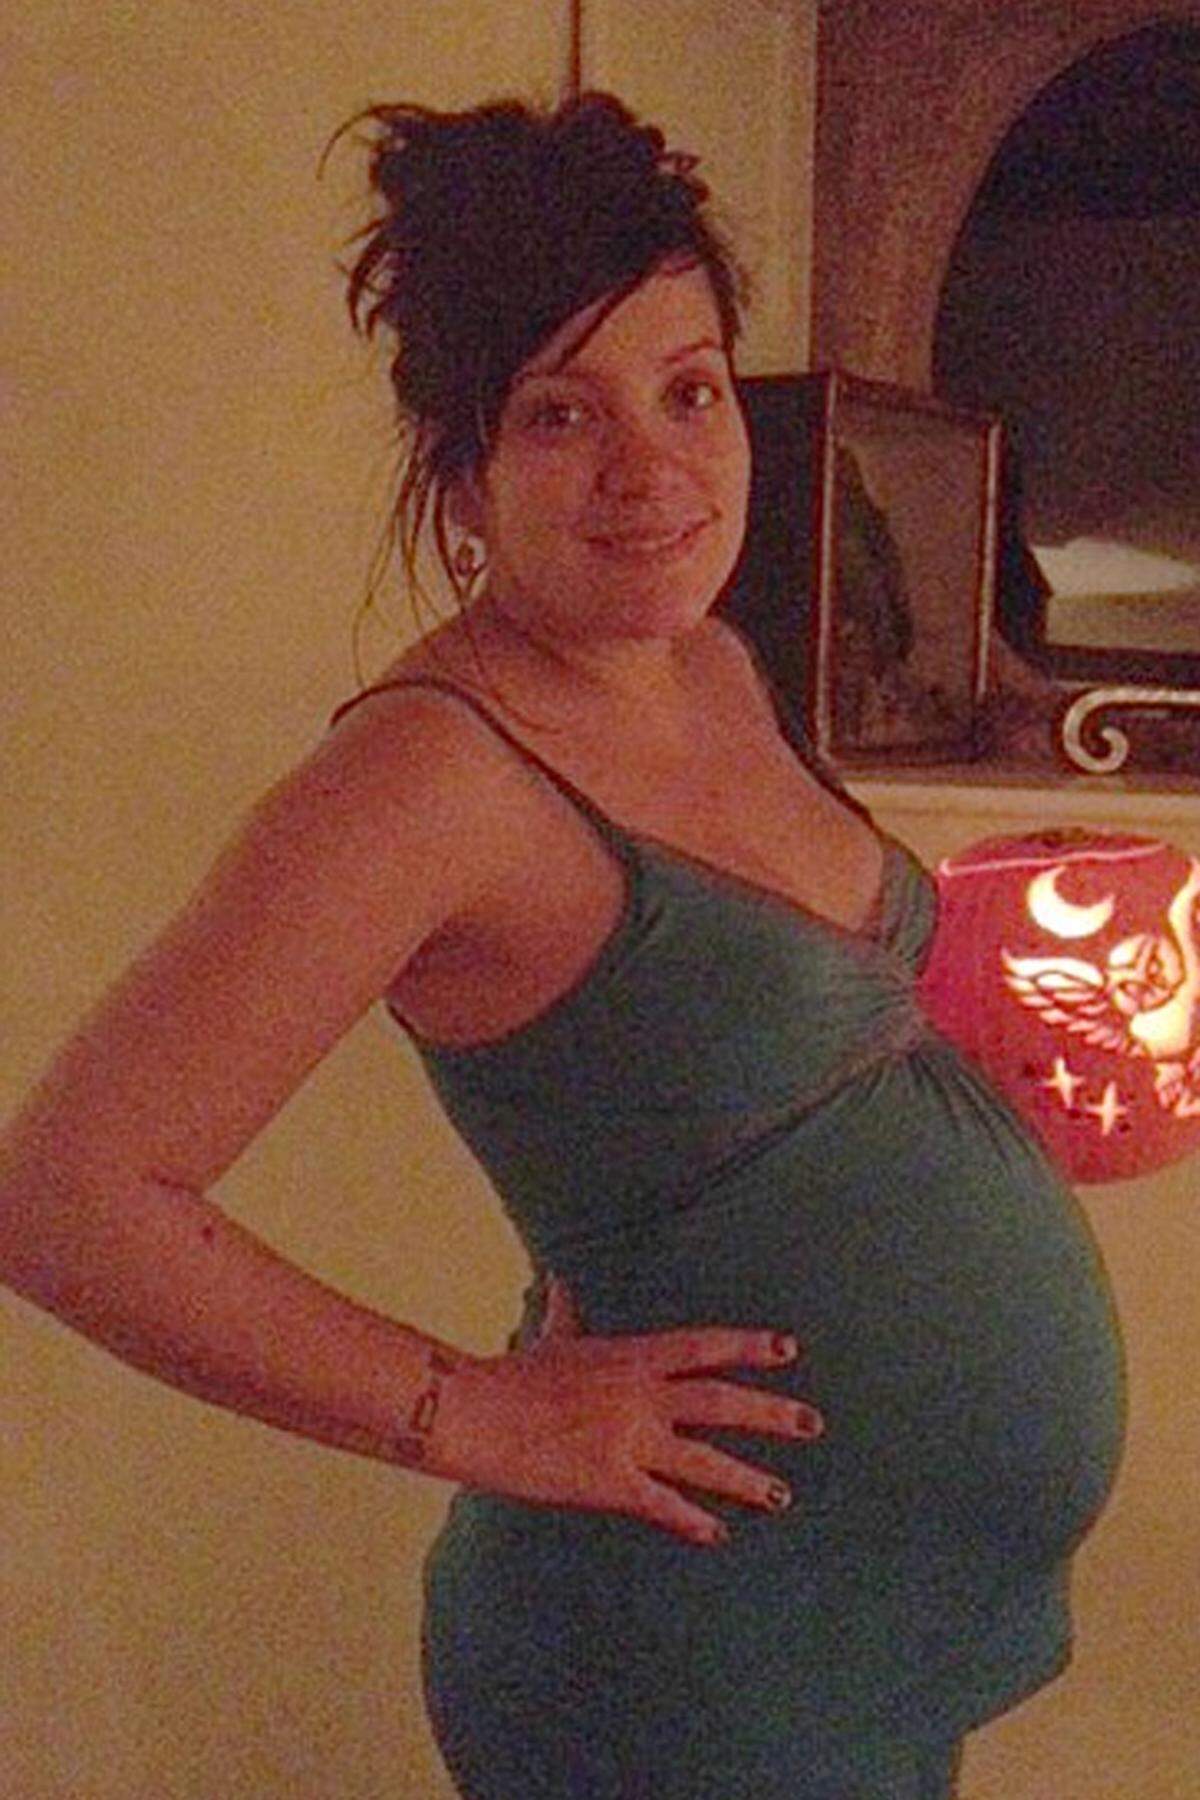 Die britische Sängerin Lily Allen hat nach zwei Fehlgeburten am 25. November ihr erstes Kind, ein Mädchen, zur Welt gebracht. Auf ihrem Twitter-Account findet man ein Bilder der Kleinen - allerdings vor der Geburt.